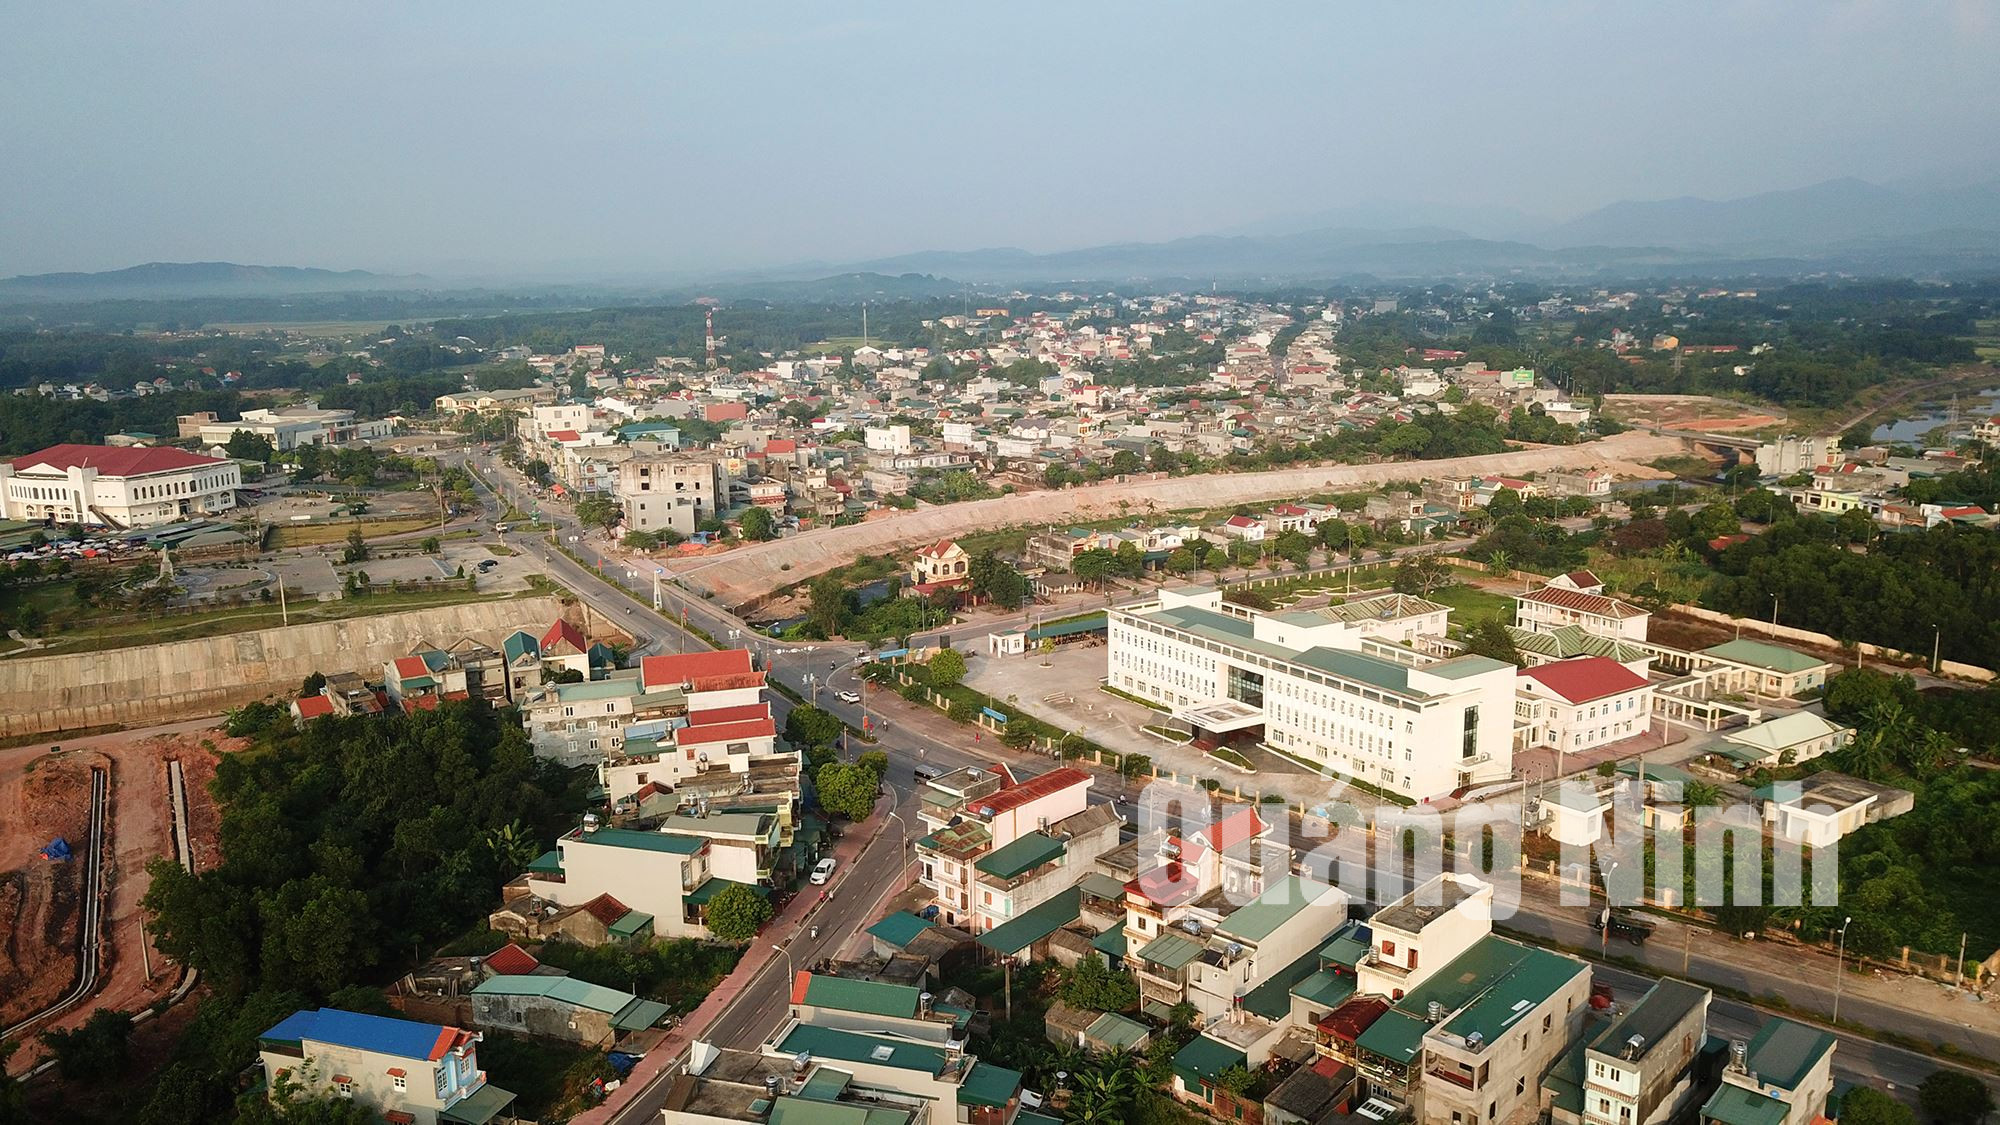 Thị trấn Đầm Hà đang chuyển mình thành một đô thị hiện đại, sầm uất (10-2018). Ảnh: Hùng Sơn